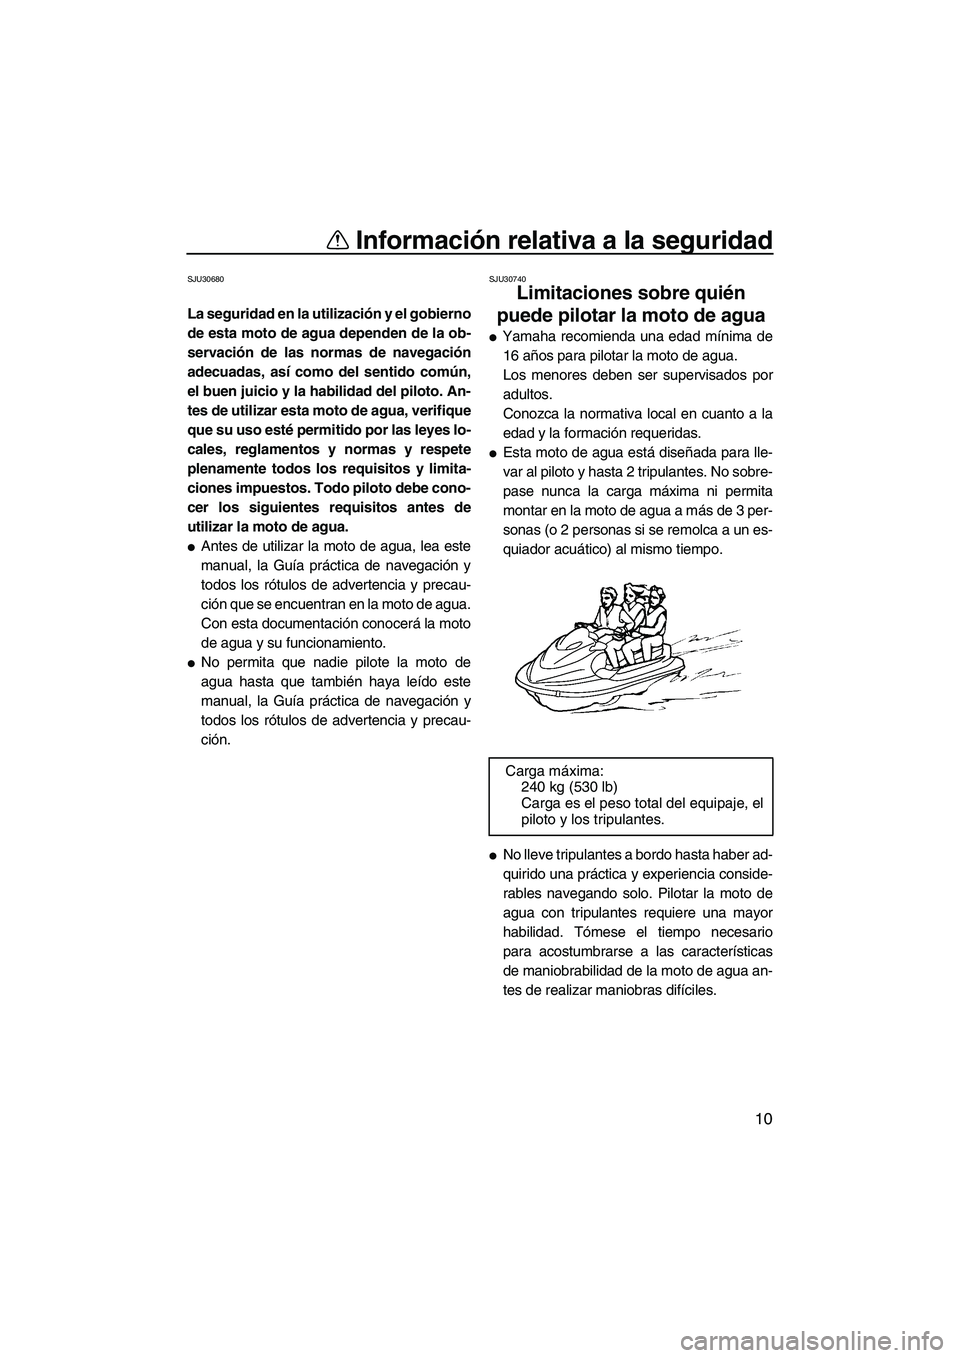 YAMAHA FX HO 2007  Manuale de Empleo (in Spanish) Información relativa a la seguridad
10
SJU30680
La seguridad en la utilización y el gobierno
de esta moto de agua dependen de la ob-
servación de las normas de navegación
adecuadas, así como del 